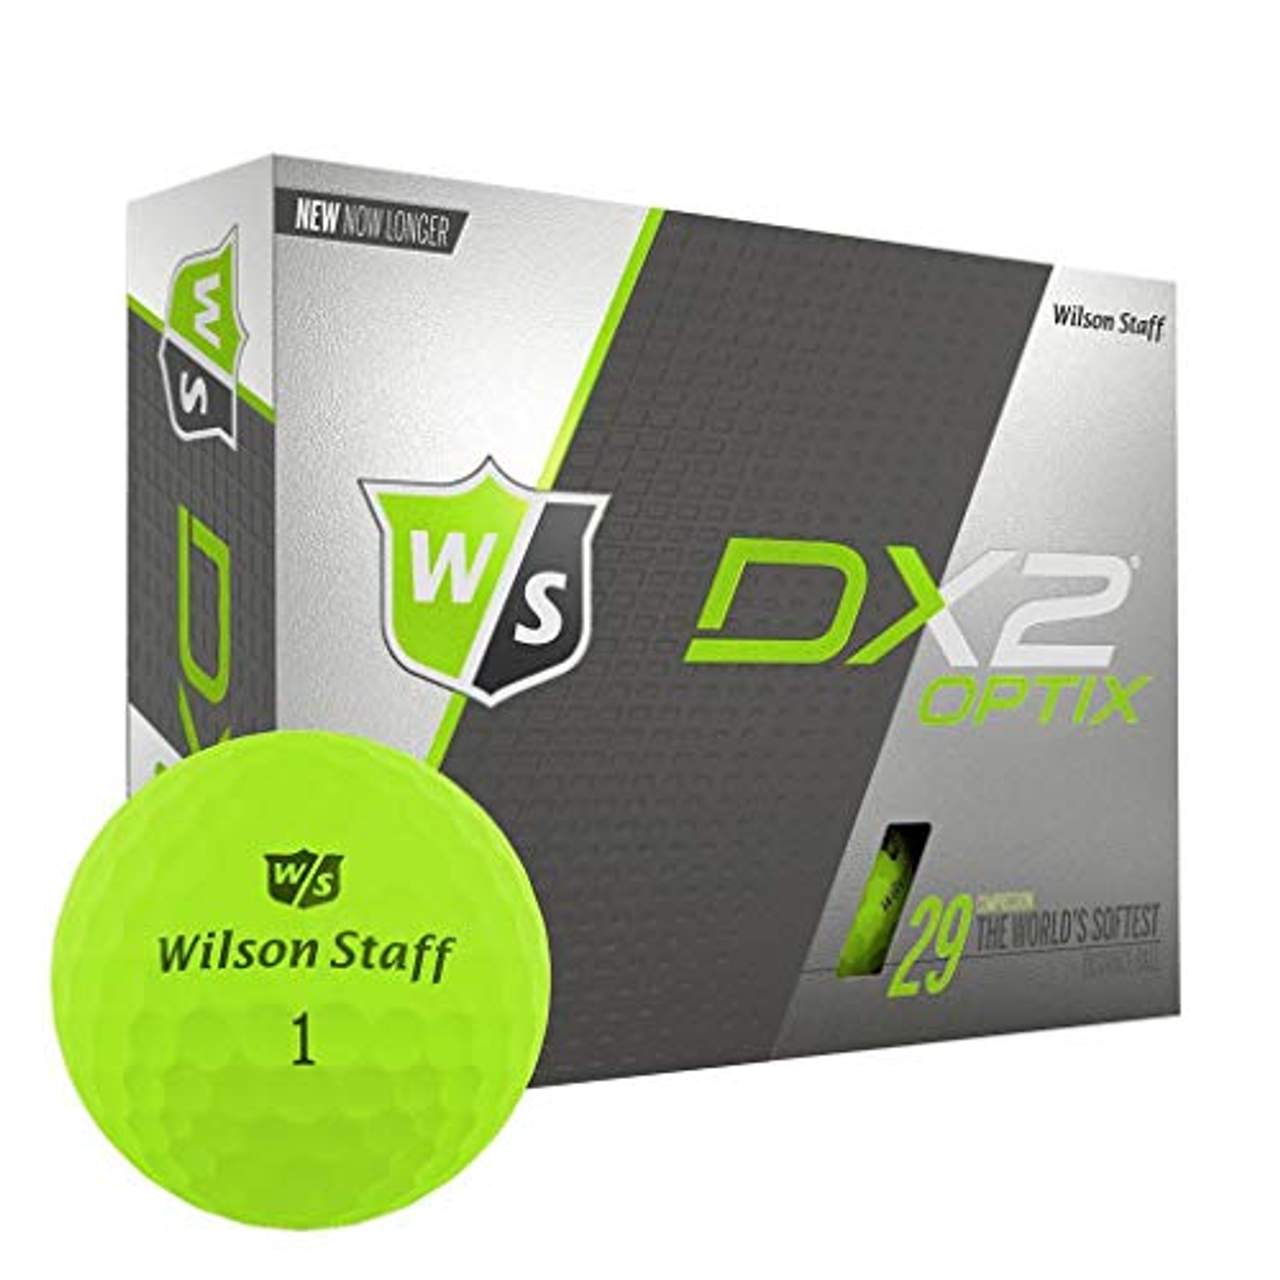 Wilson Dx2 Optix